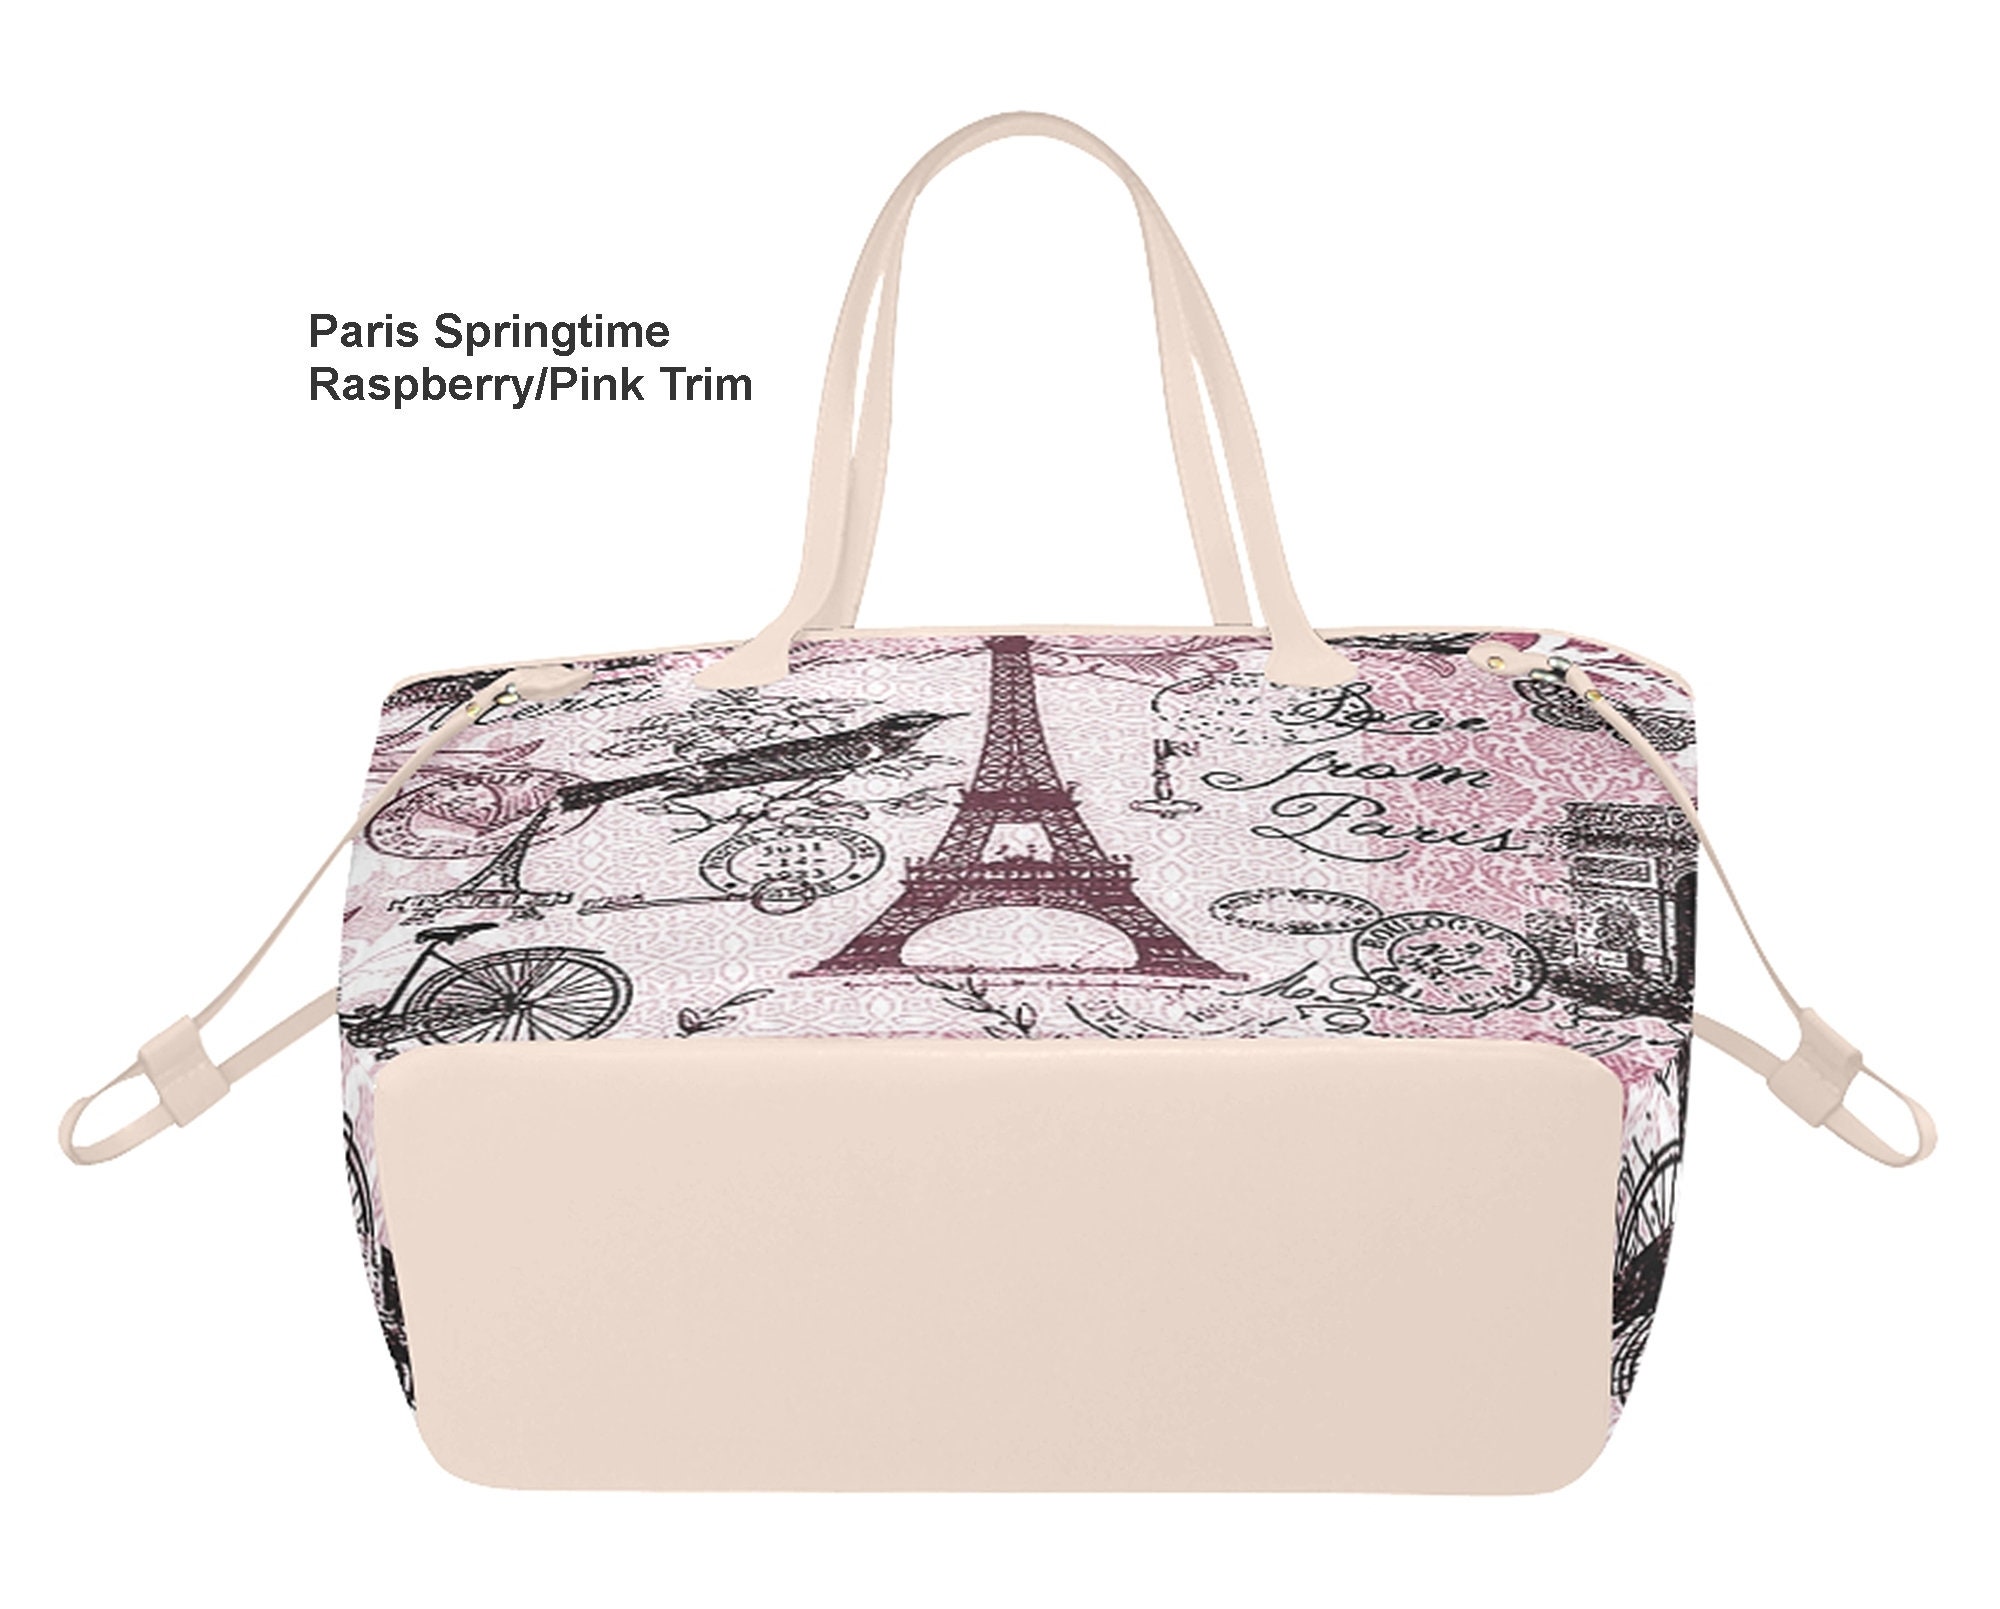 Paris Tote Bag Springtime in Paris Fashionista Bag Vegan 